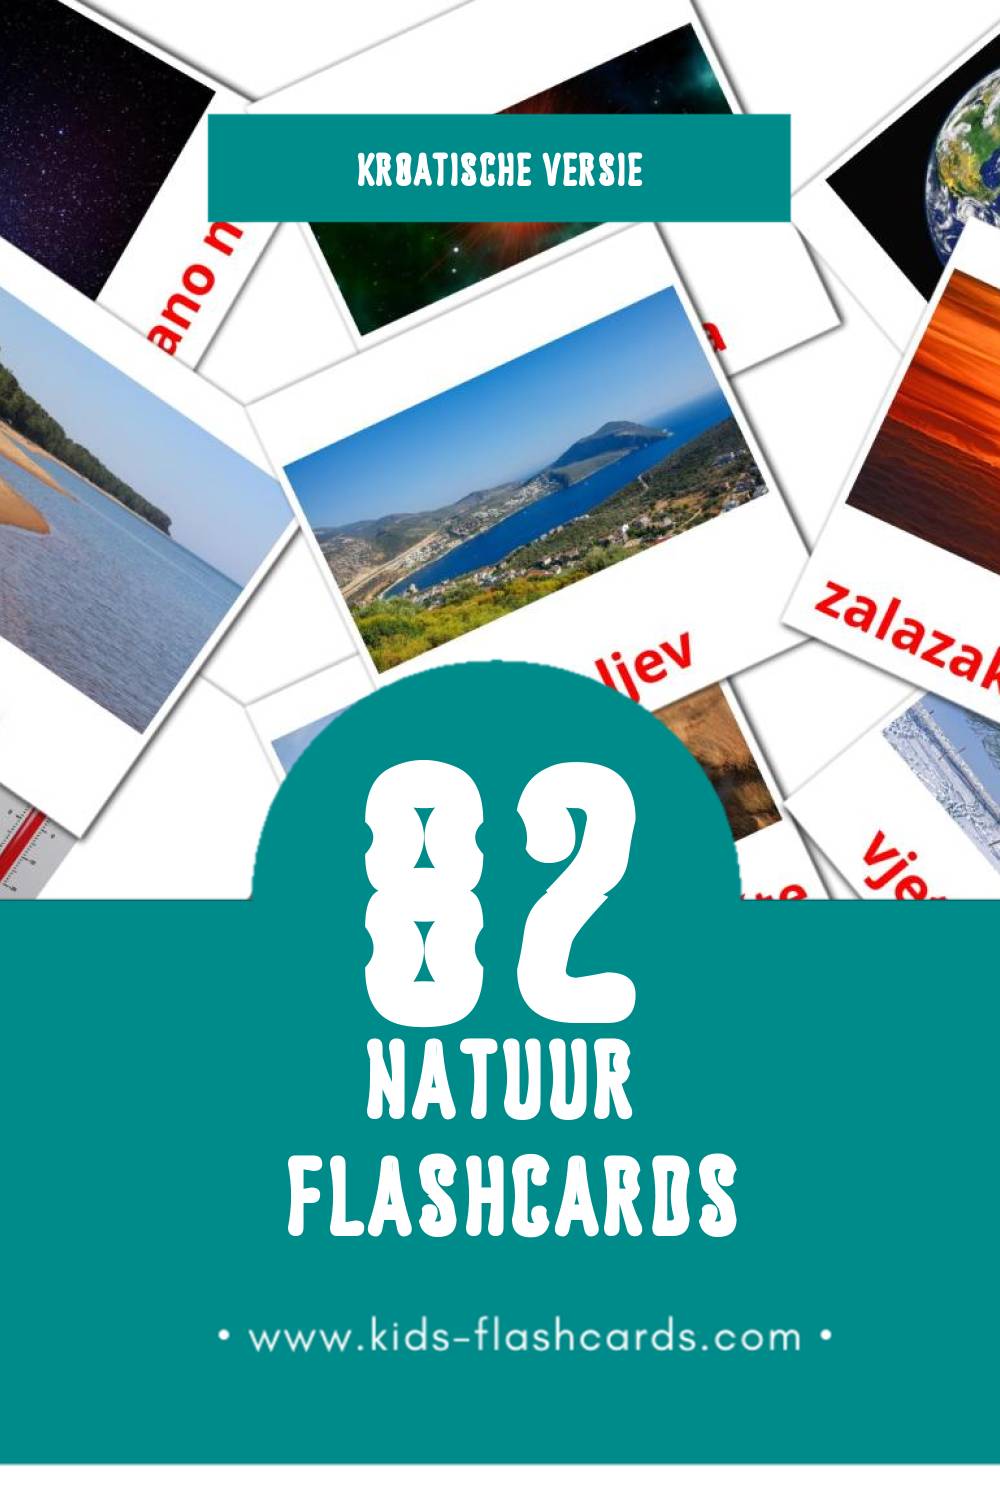 Visuele Priroda Flashcards voor Kleuters (82 kaarten in het Kroatisch)